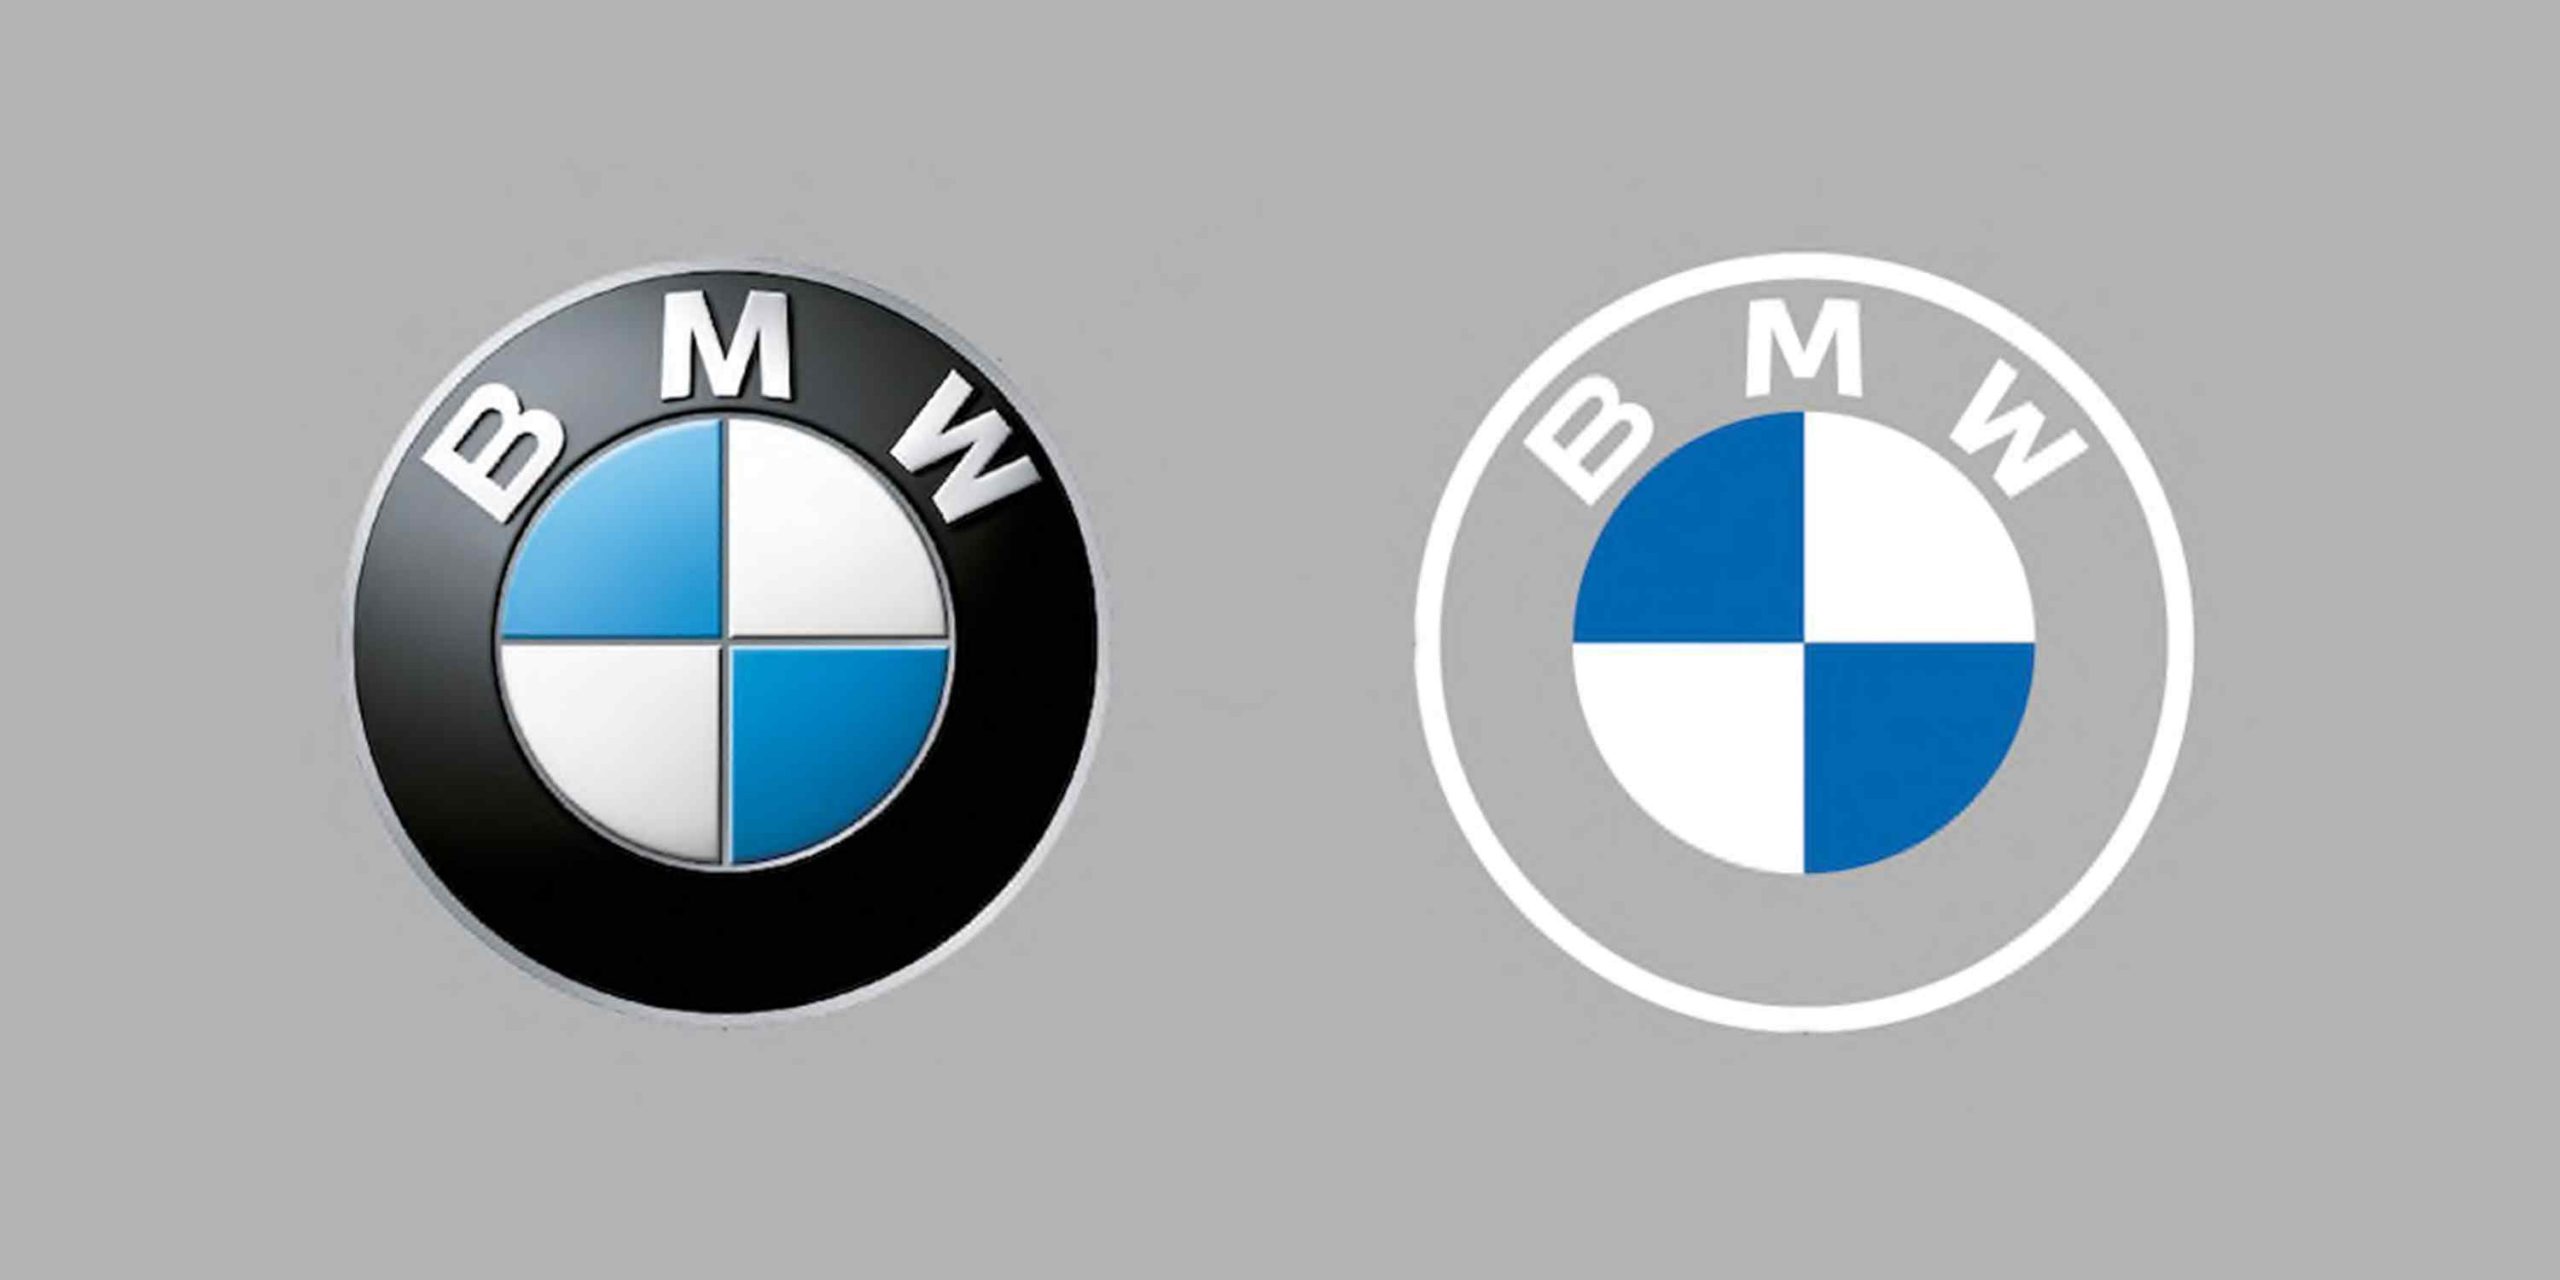 BMW Nasıl Kuruldu? BMW'nin Tarihi ve Kuruluşu?